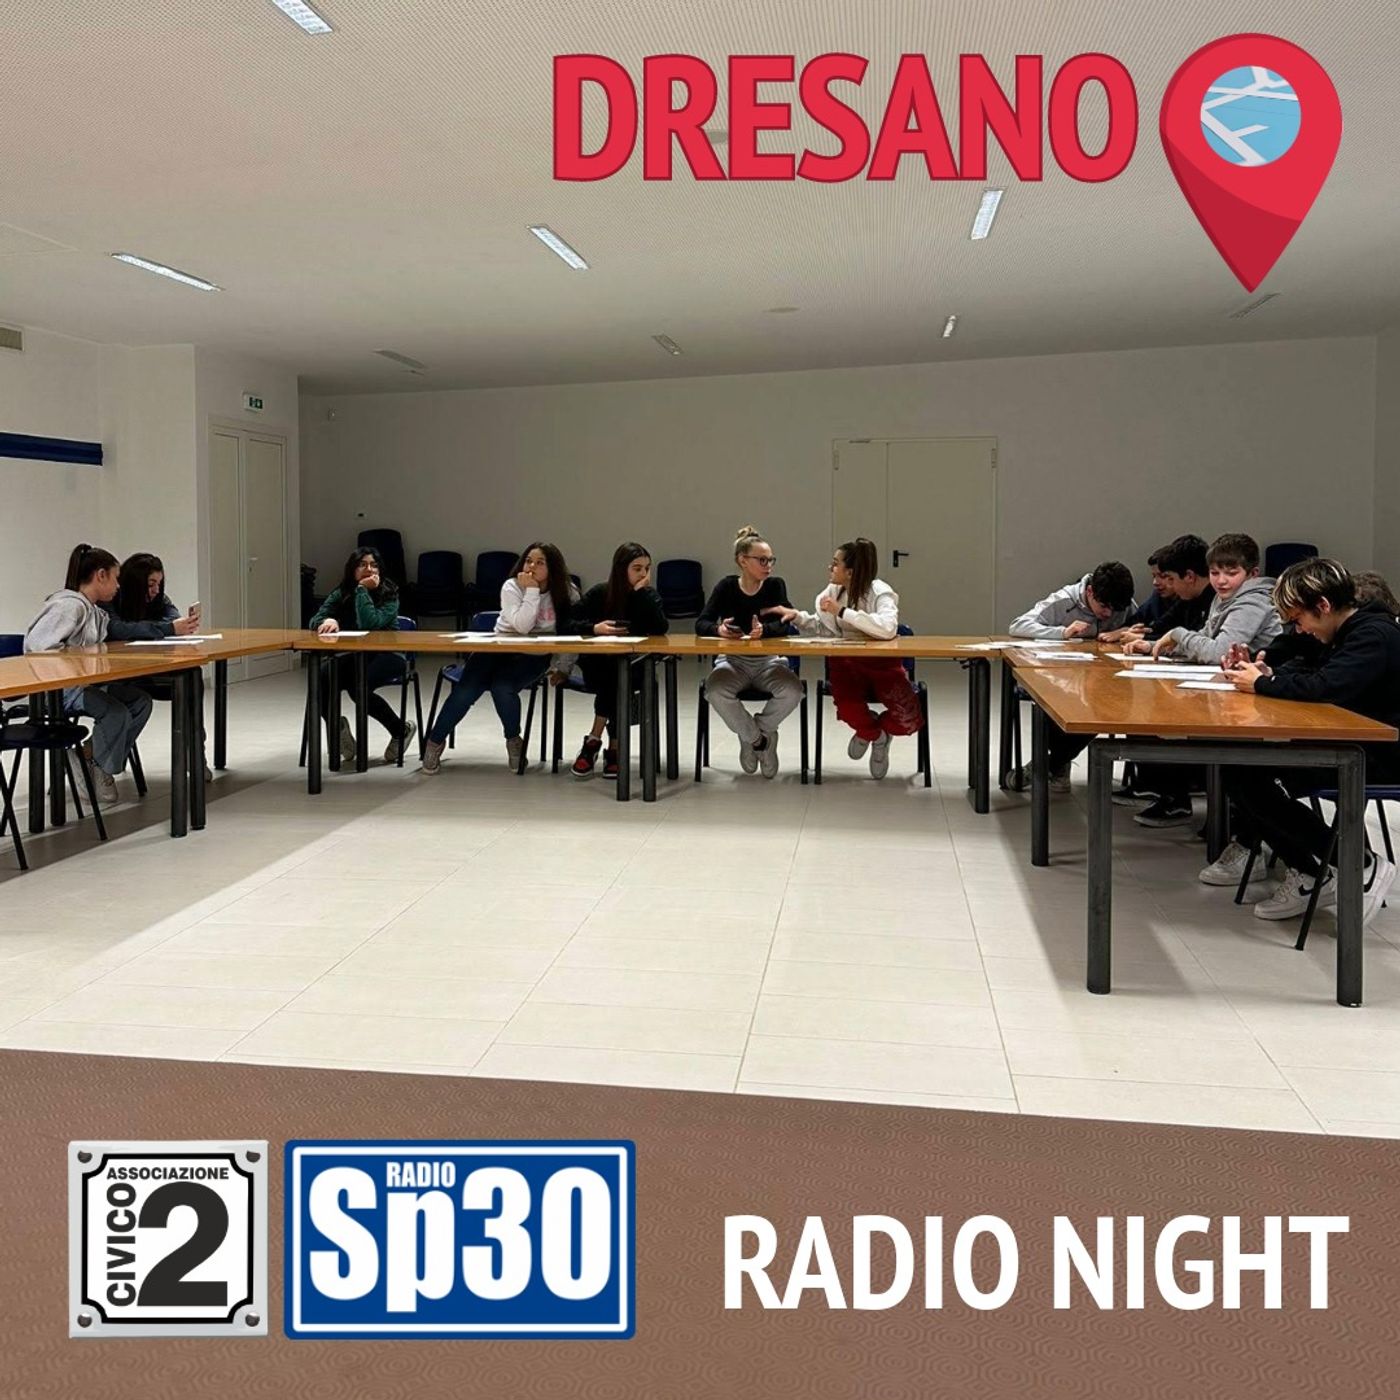 #RadioLab - Radio Night - Dresano